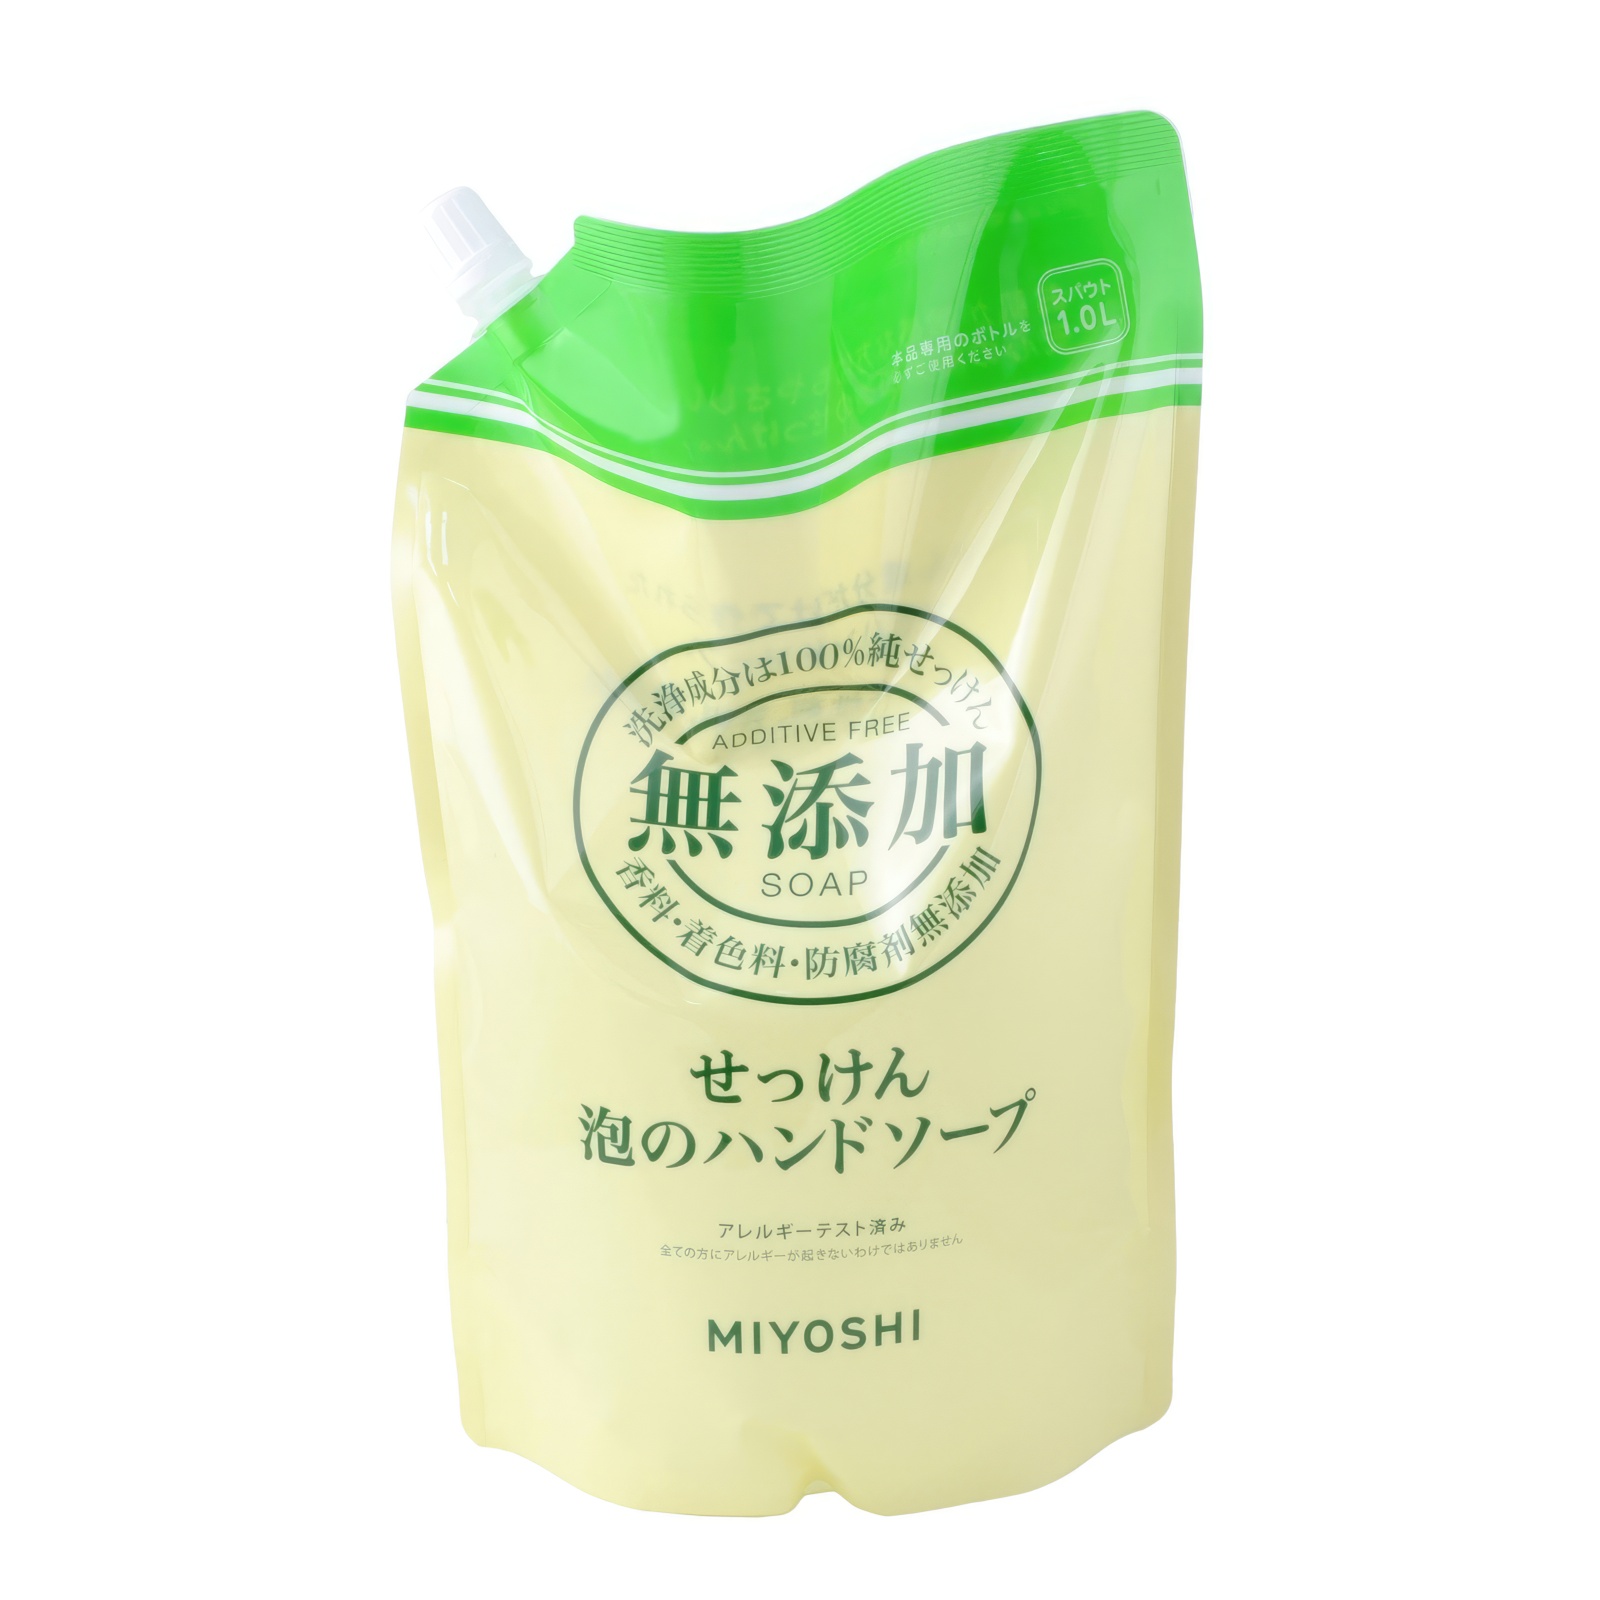 Жидкое мыло MIYOSHI Натуральное пенящееся эко для рук дойпак 1 л synergetic жидкое мыло лемонграсс и мята антибактериальное с эффектом нейтрализации запаха 1000 0